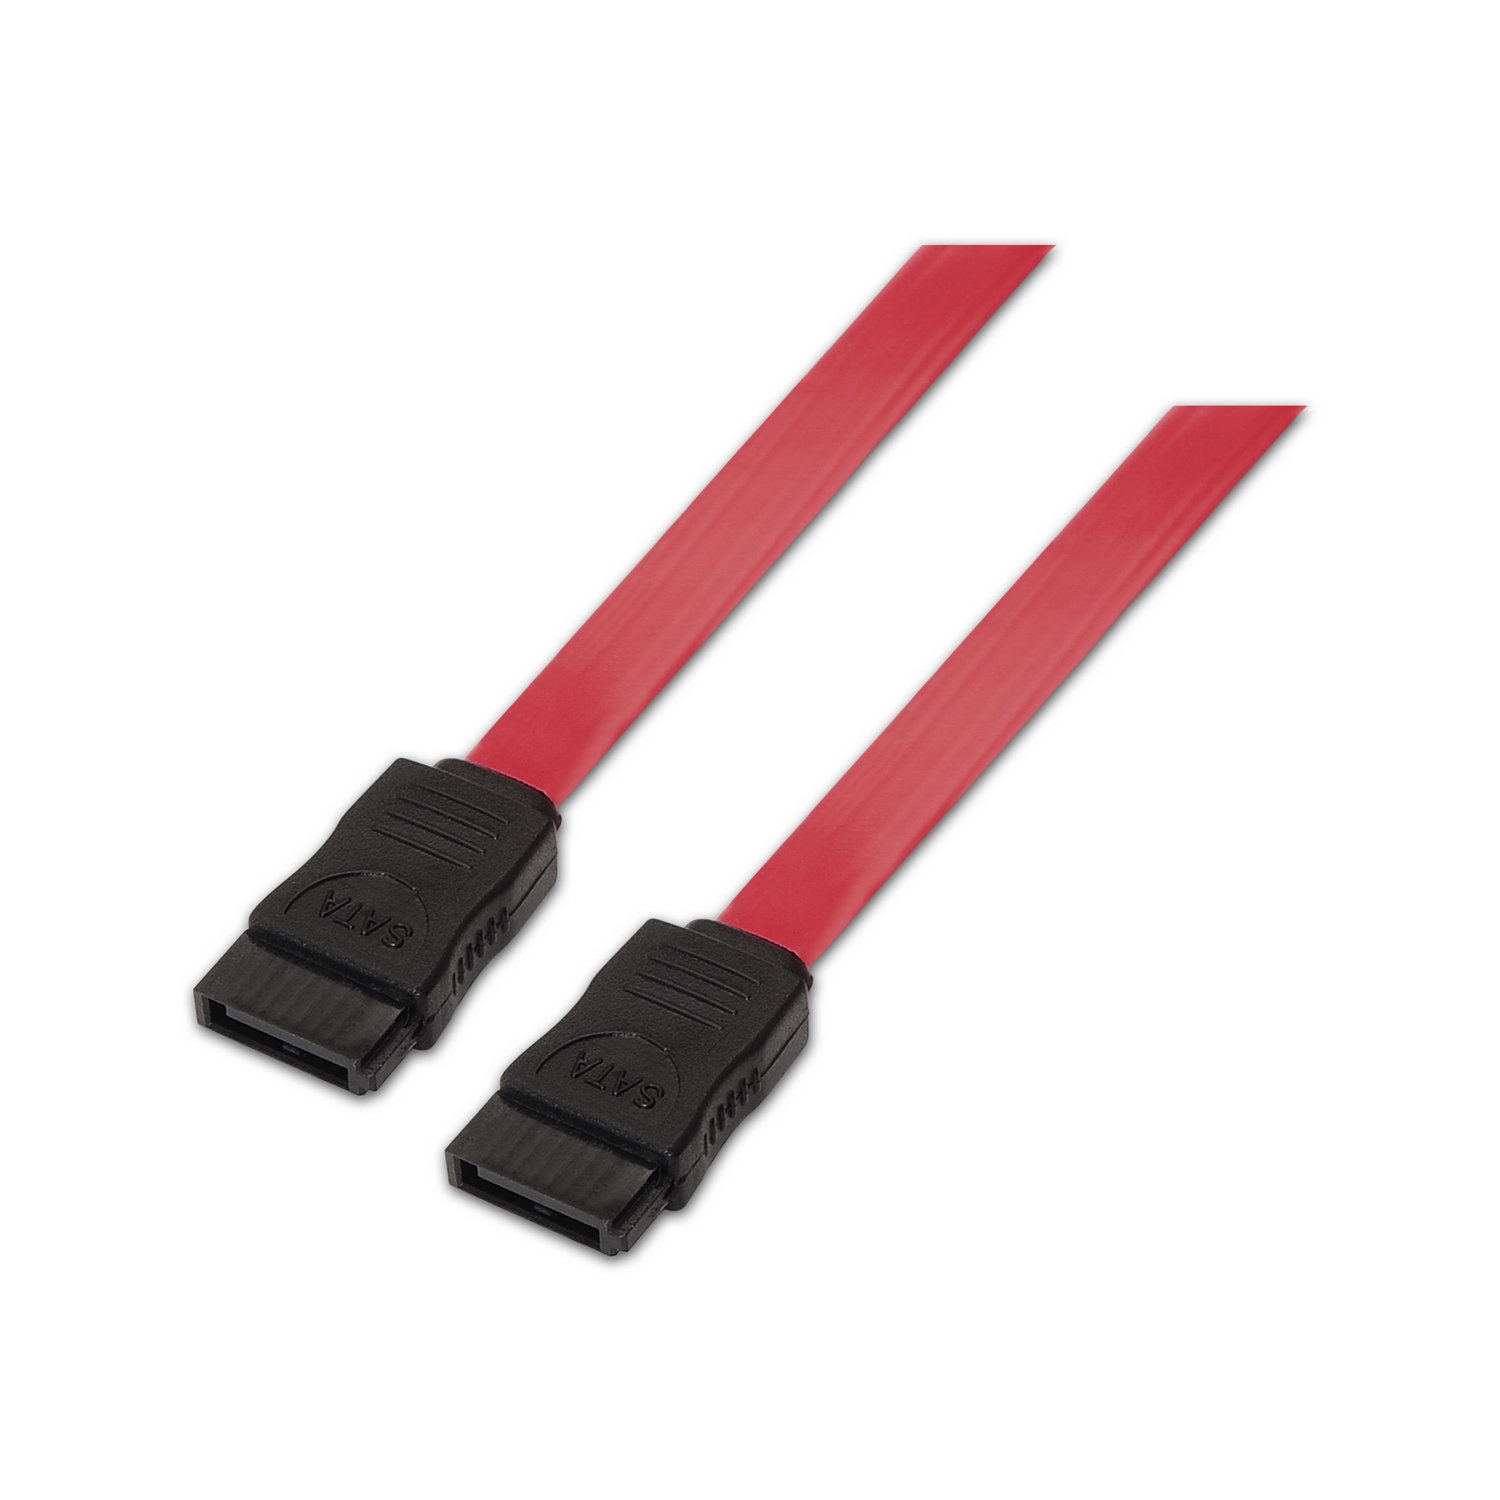 Cable SATA III datos 6G datos, rojo, 0.5 metros para disco duro